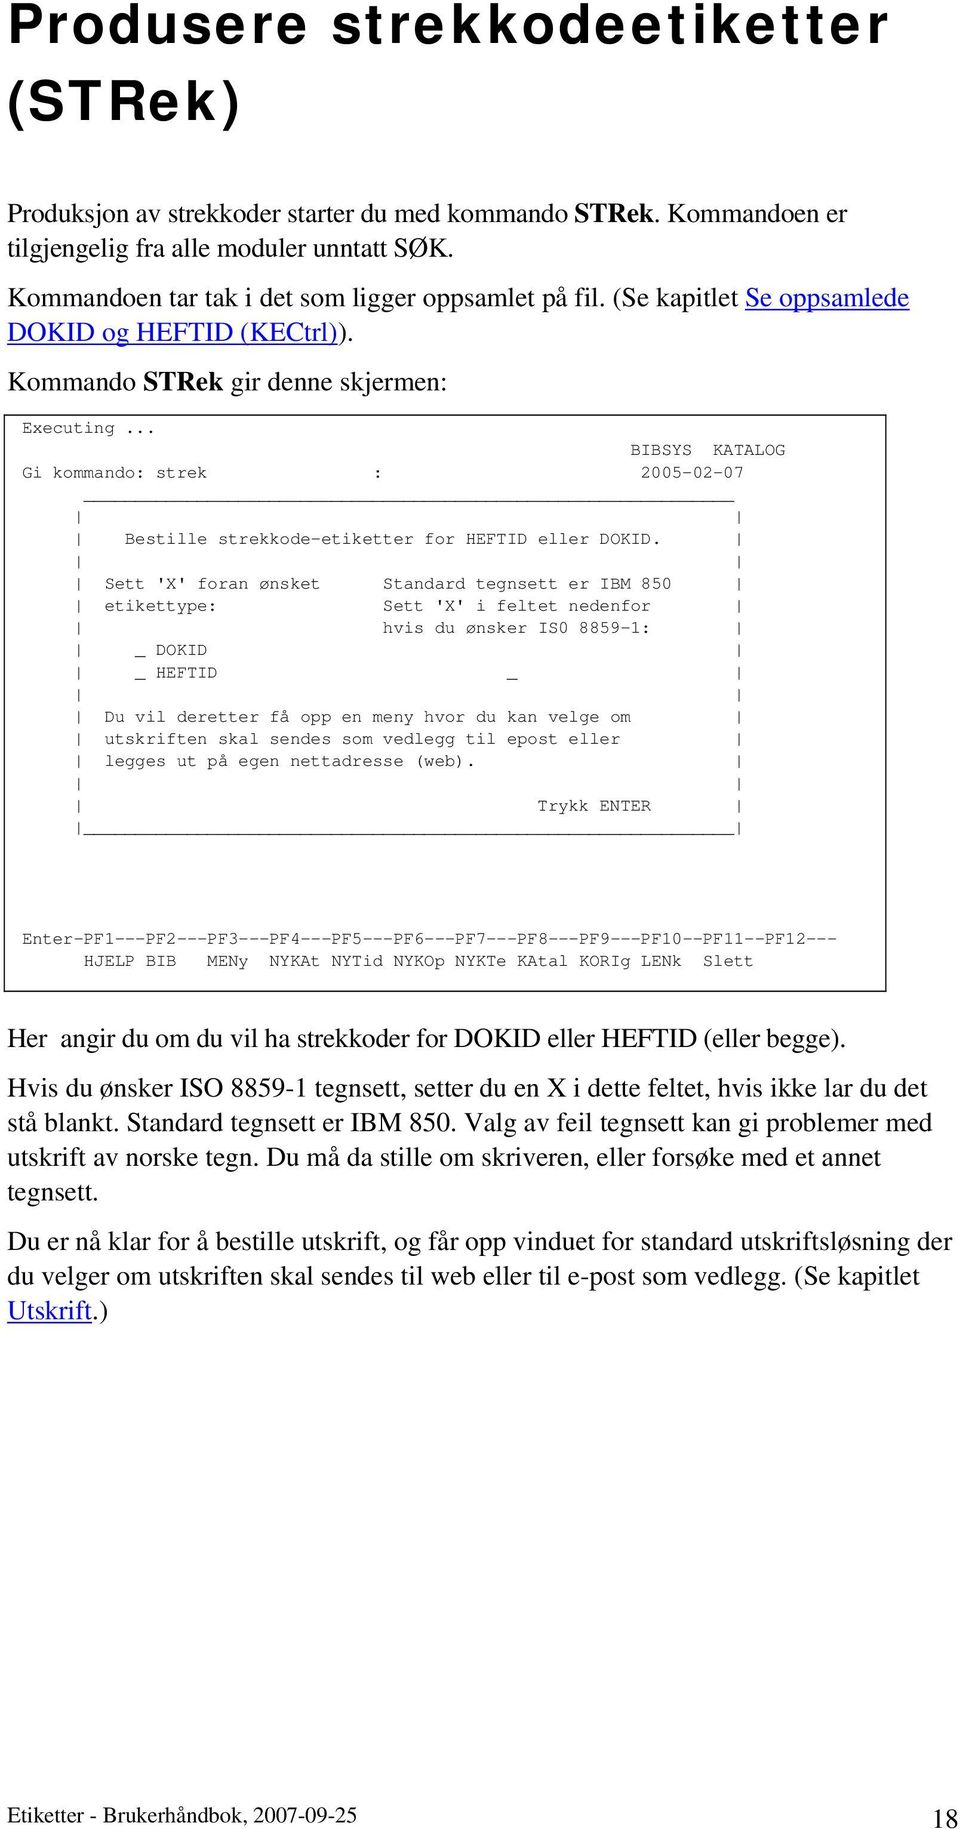 .. BIBSYS KATALOG Gi kommando: strek : 2005-02-07 Bestille strekkode-etiketter for HEFTID eller DOKID.